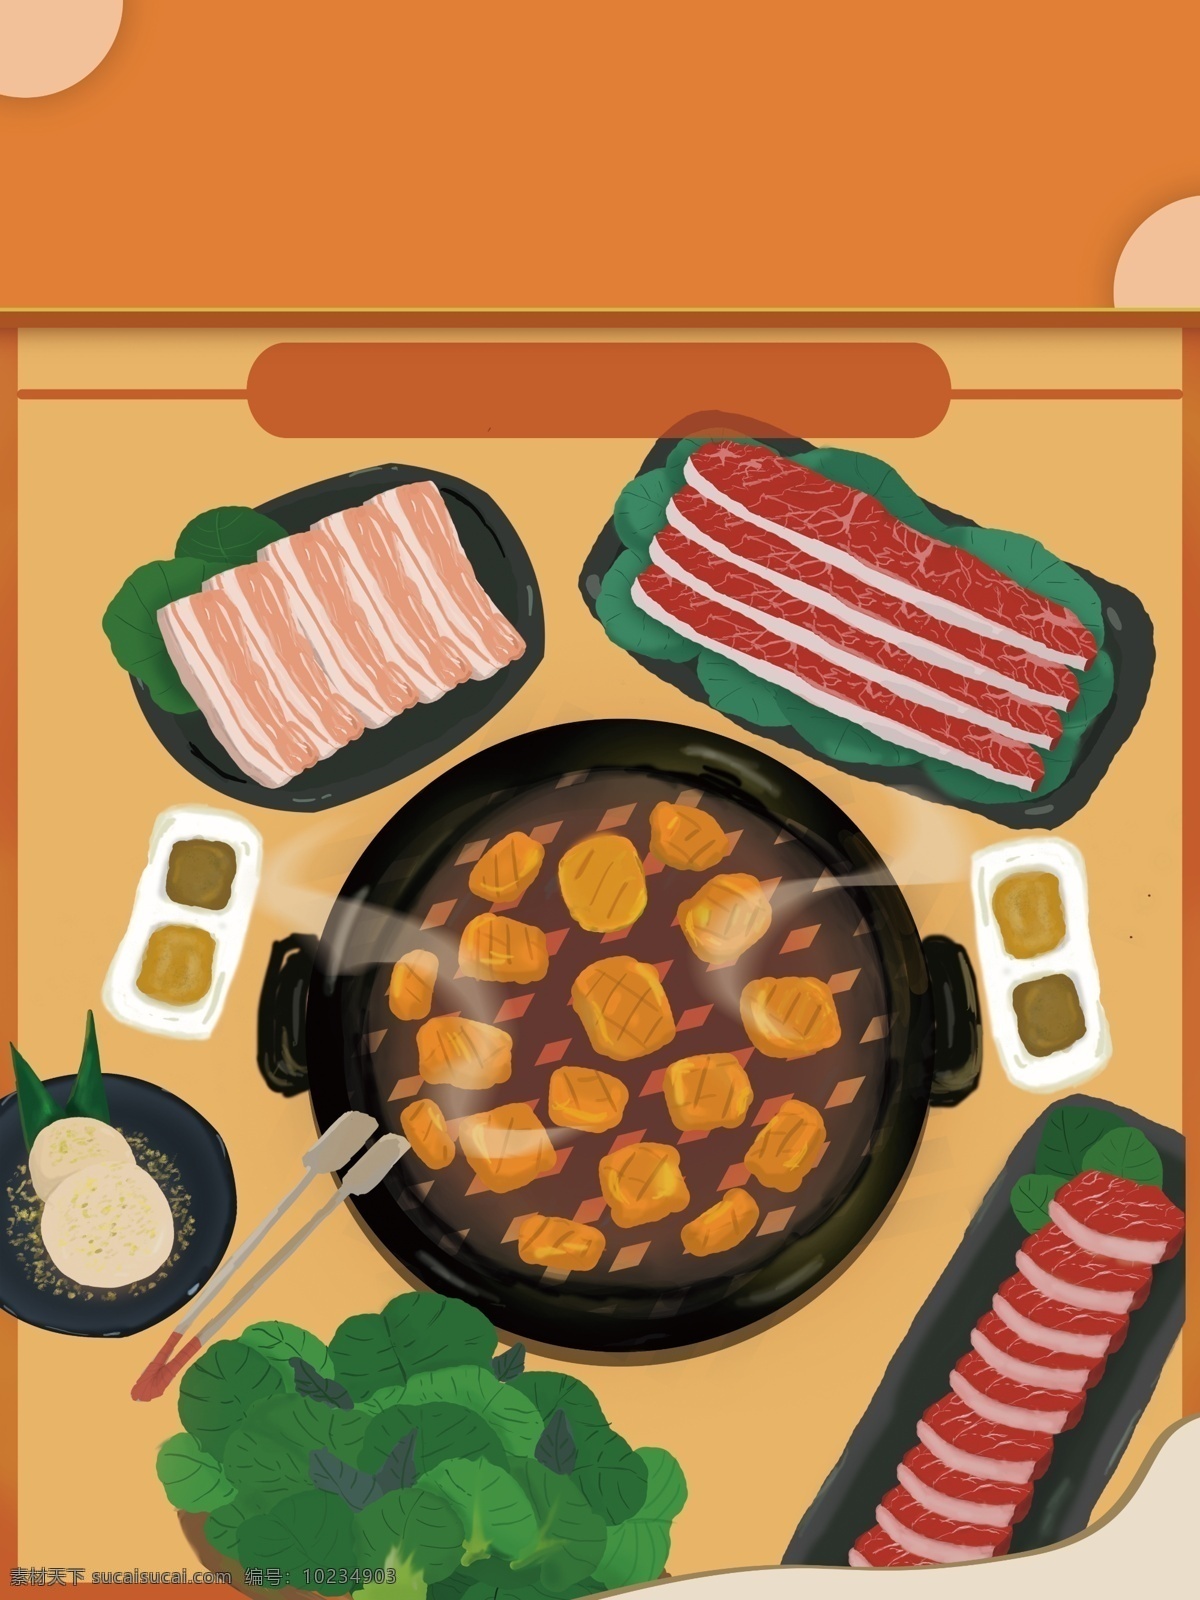 橙色 手绘 美味 烤肉 插画 背景 图 背景素材 美味背景 烧烤背景 食物背景 熟食背景 烤肉背景